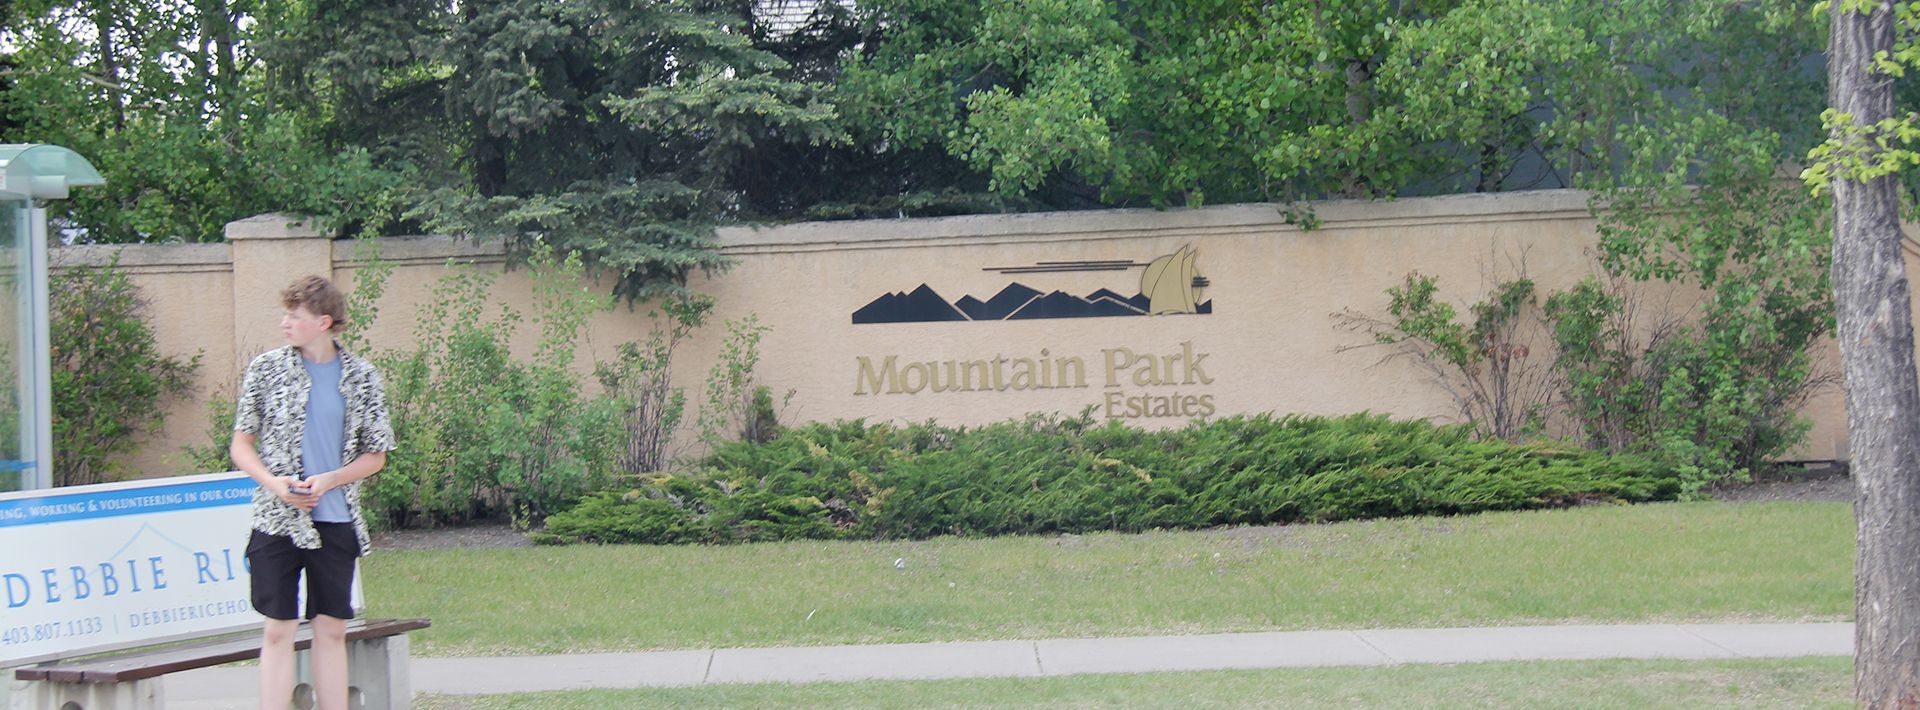 A sign that says Mountain park estates